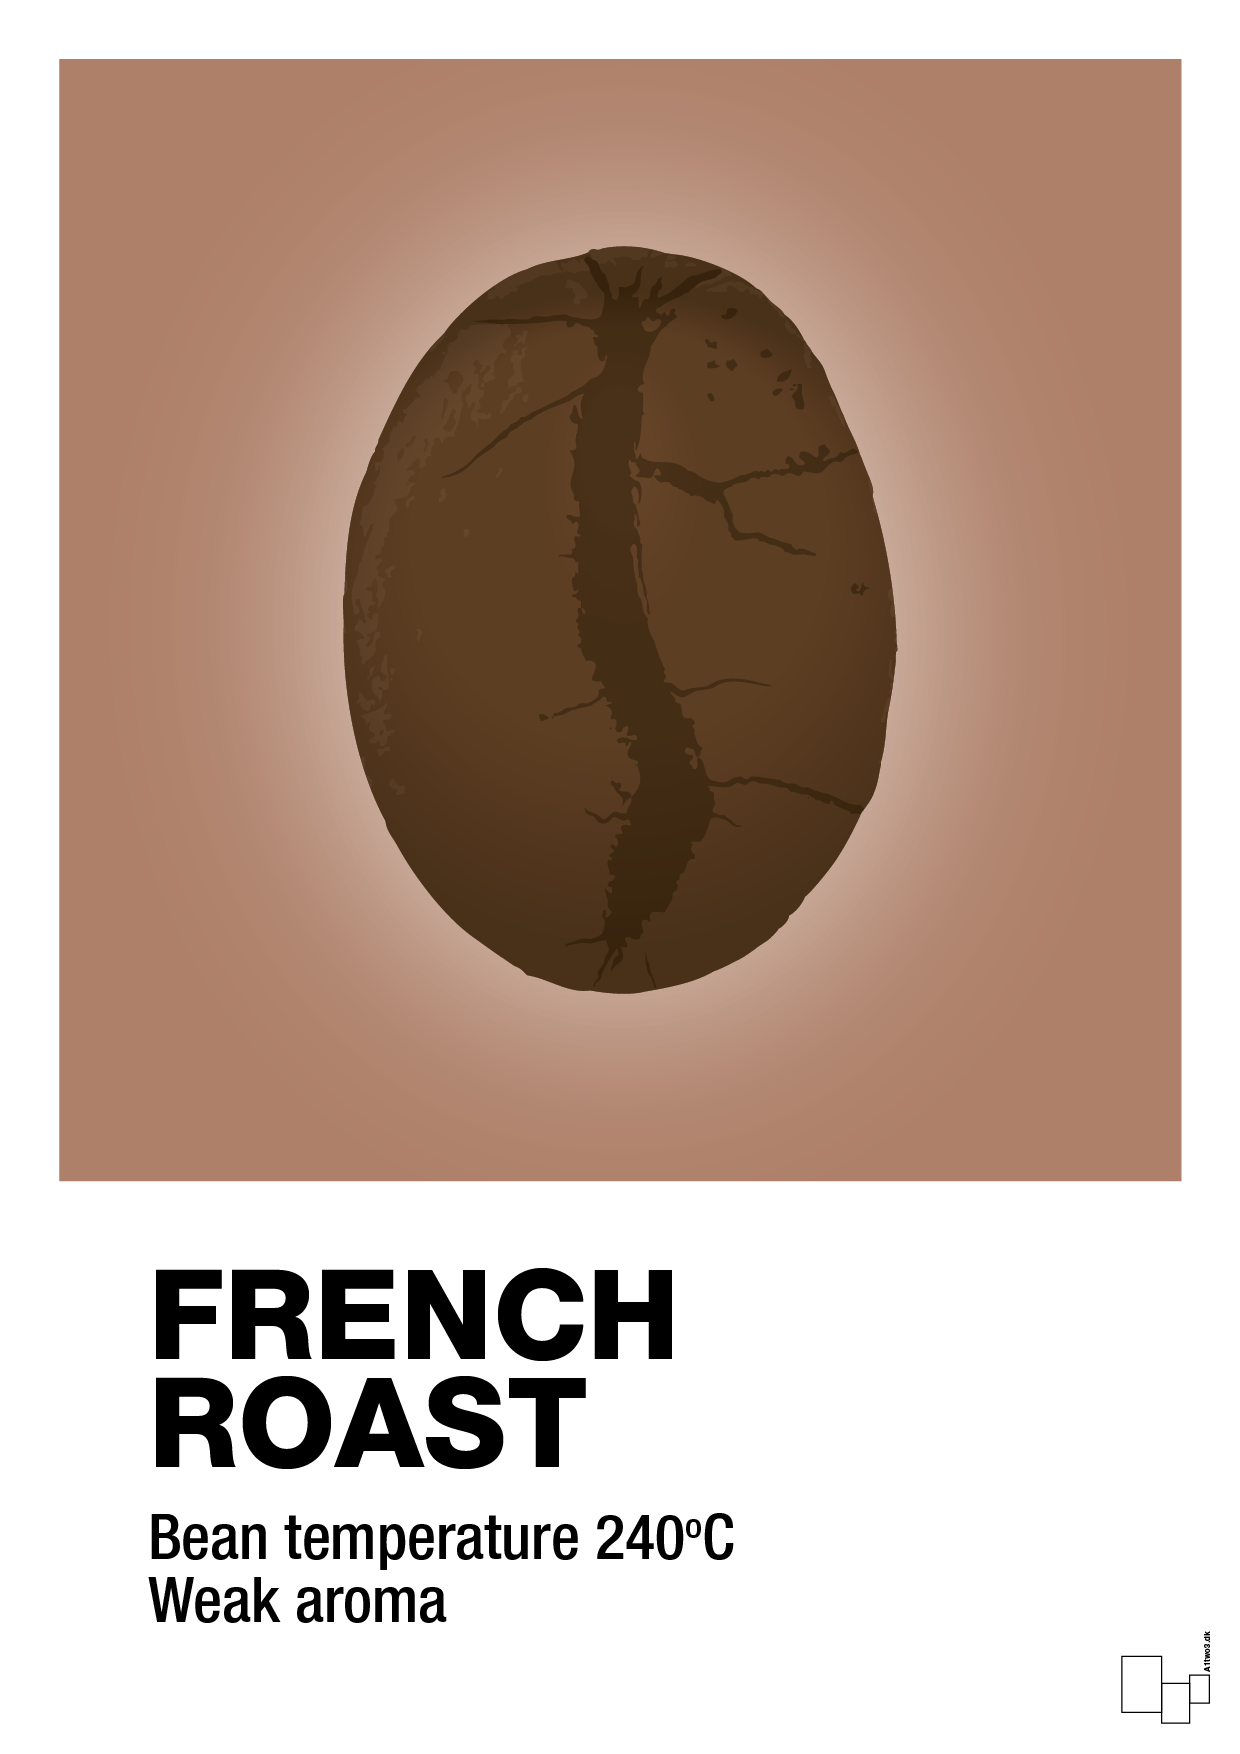 french roast - Plakat med Mad & Drikke i Cider Spice